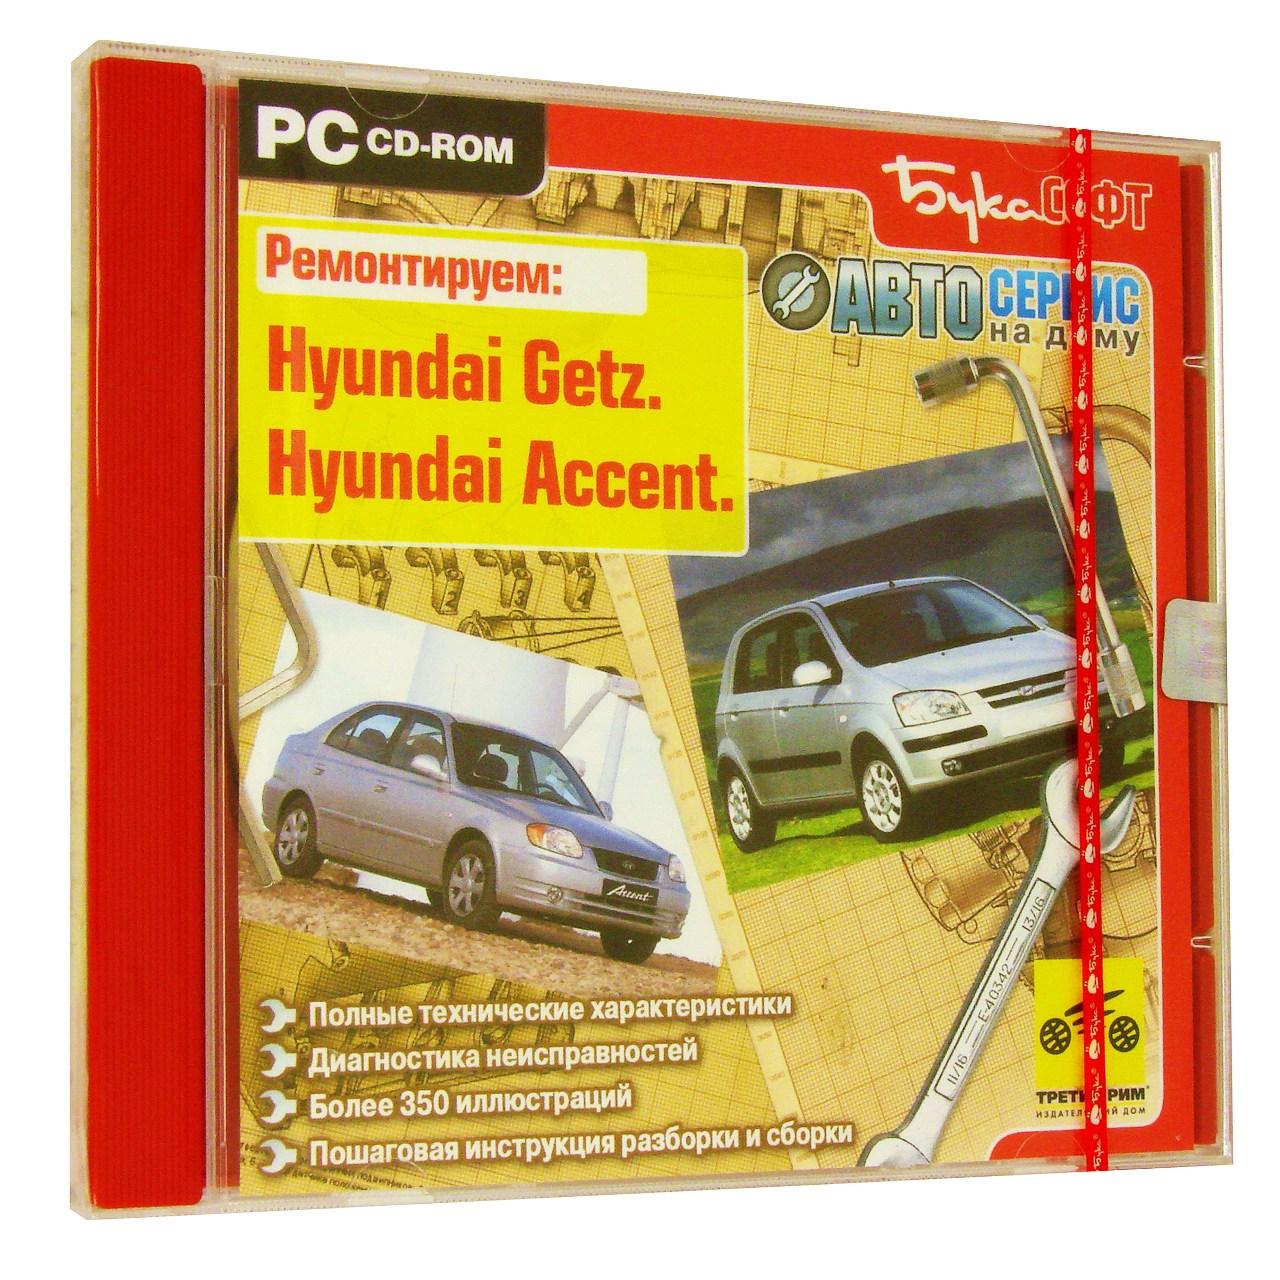 Компьютерный компакт-диск Hyundai Accent. Hyundai Getz. ’Автосервис на дому’ (ПК), фирма "Бука", 1CD